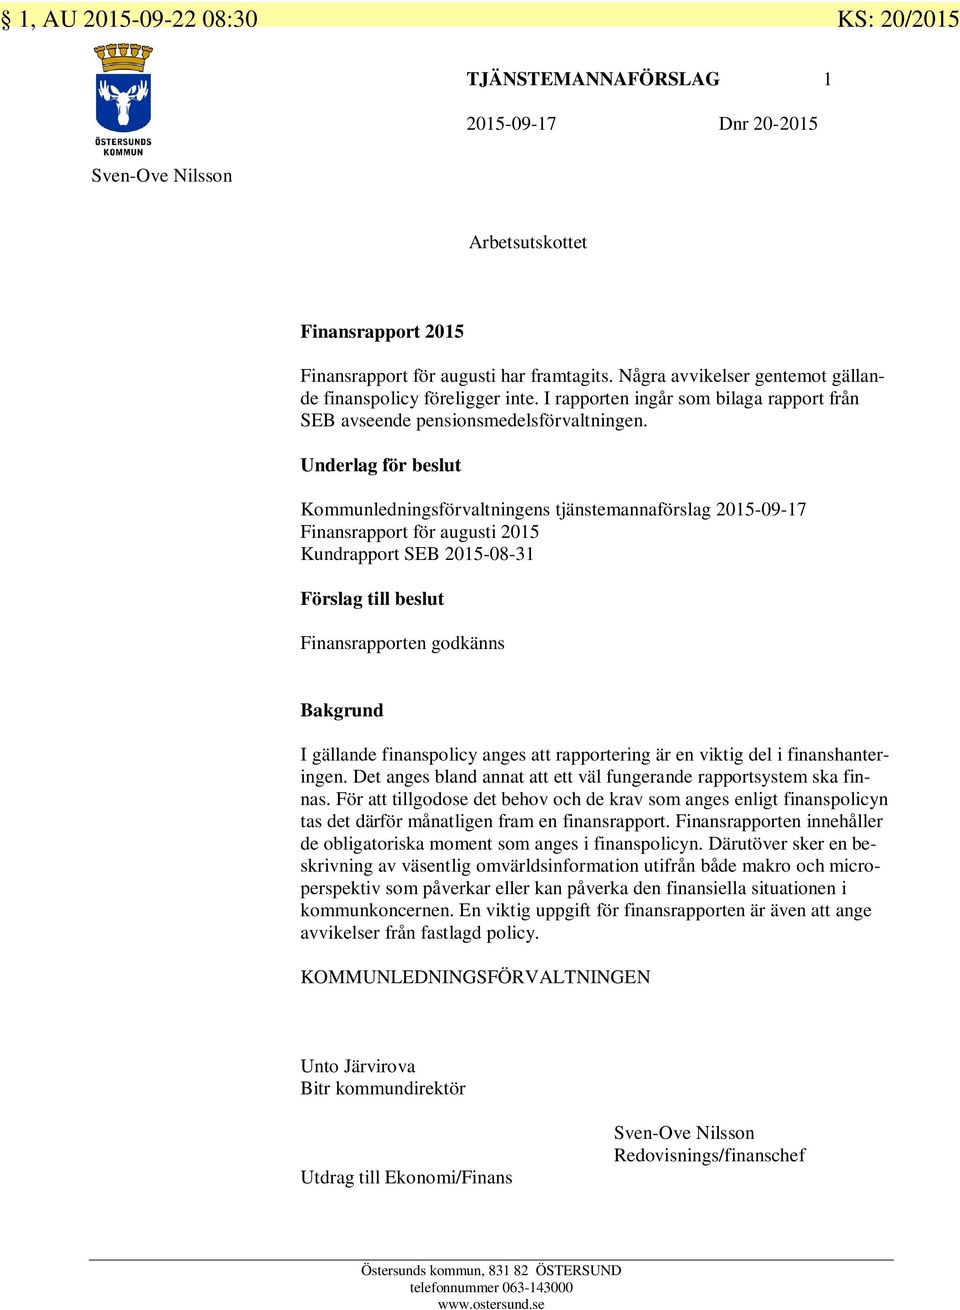 Underlag för beslut Kommunledningsförvaltningens tjänstemannaförslag 2015-09-17 Finansrapport för augusti 2015 Kundrapport SEB 2015-08-31 Förslag till beslut Finansrapporten godkänns Bakgrund I